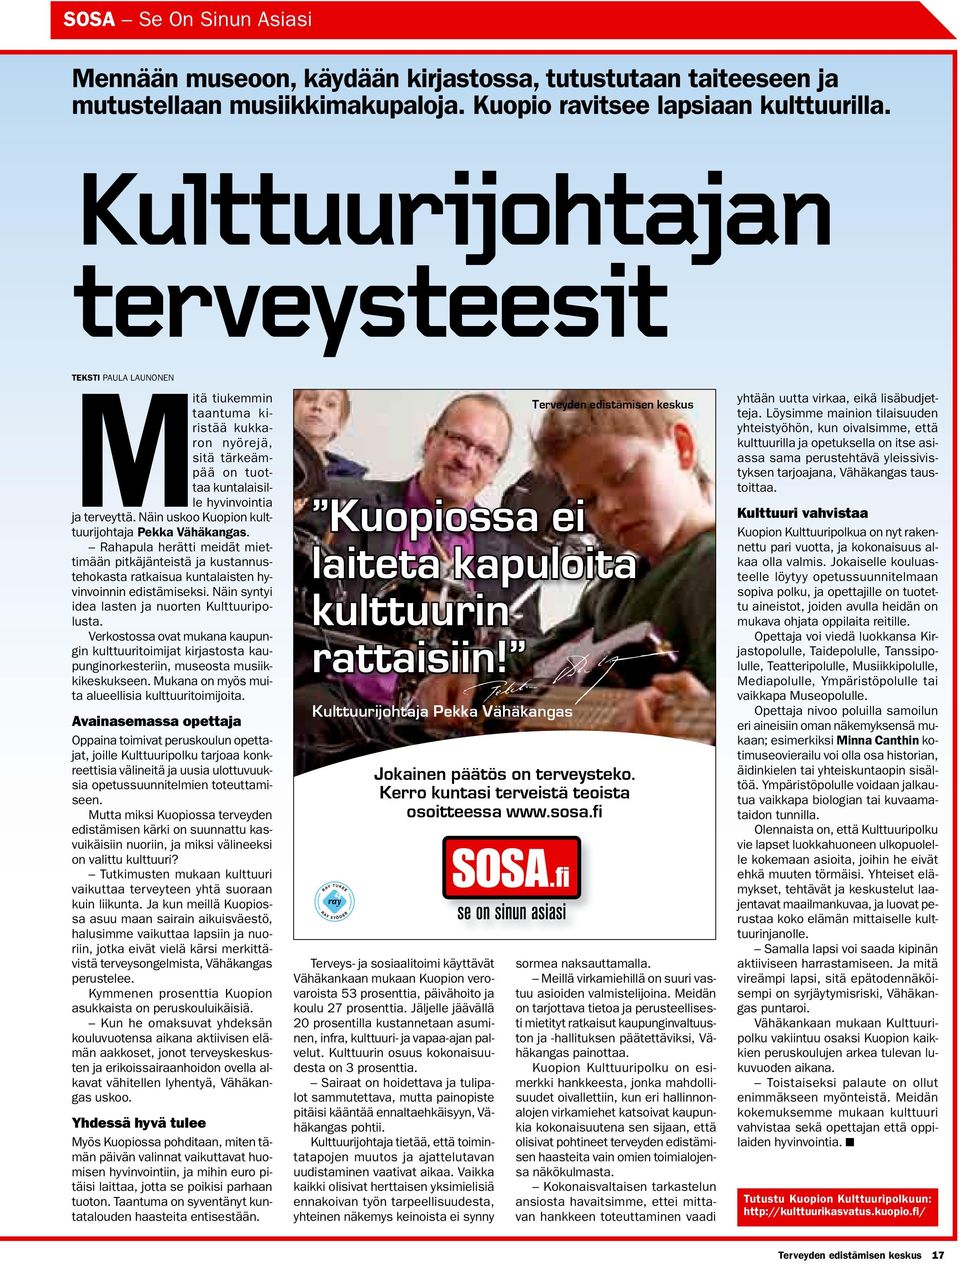 Näin uskoo Kuopion kulttuurijohtaja Pekka Vähäkangas. Rahapula herätti meidät miettimään pitkäjänteistä ja kustannustehokasta ratkaisua kuntalaisten hyvinvoinnin edistämiseksi.